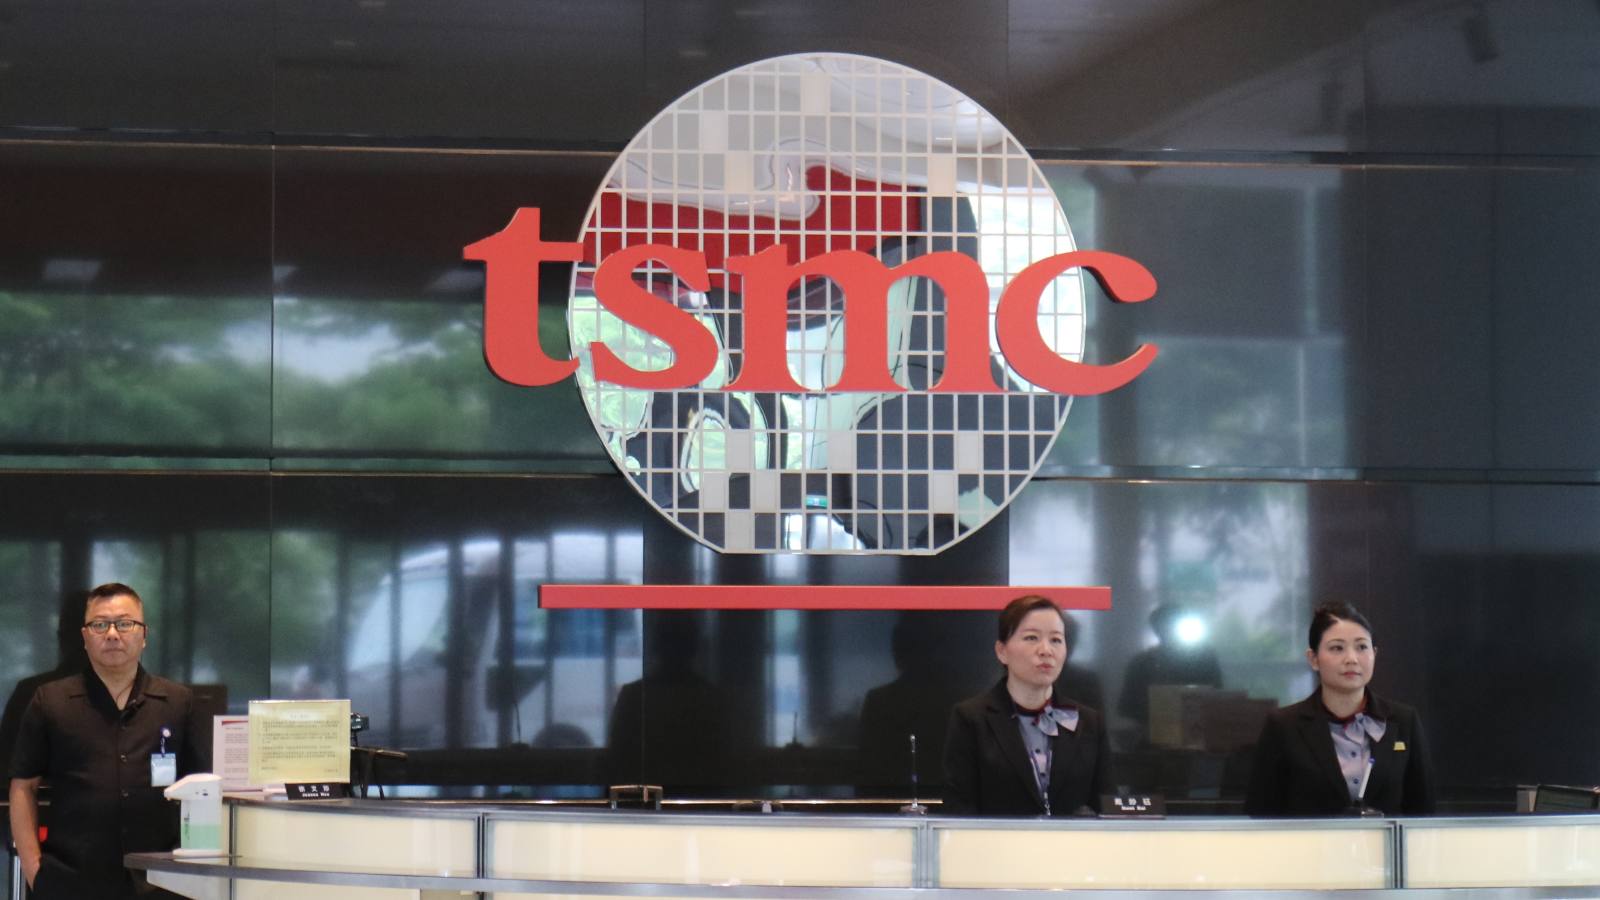 Заражение вирусом привело к остановке производства на заводах TSMC – единственного поставщика чипов для iPhone